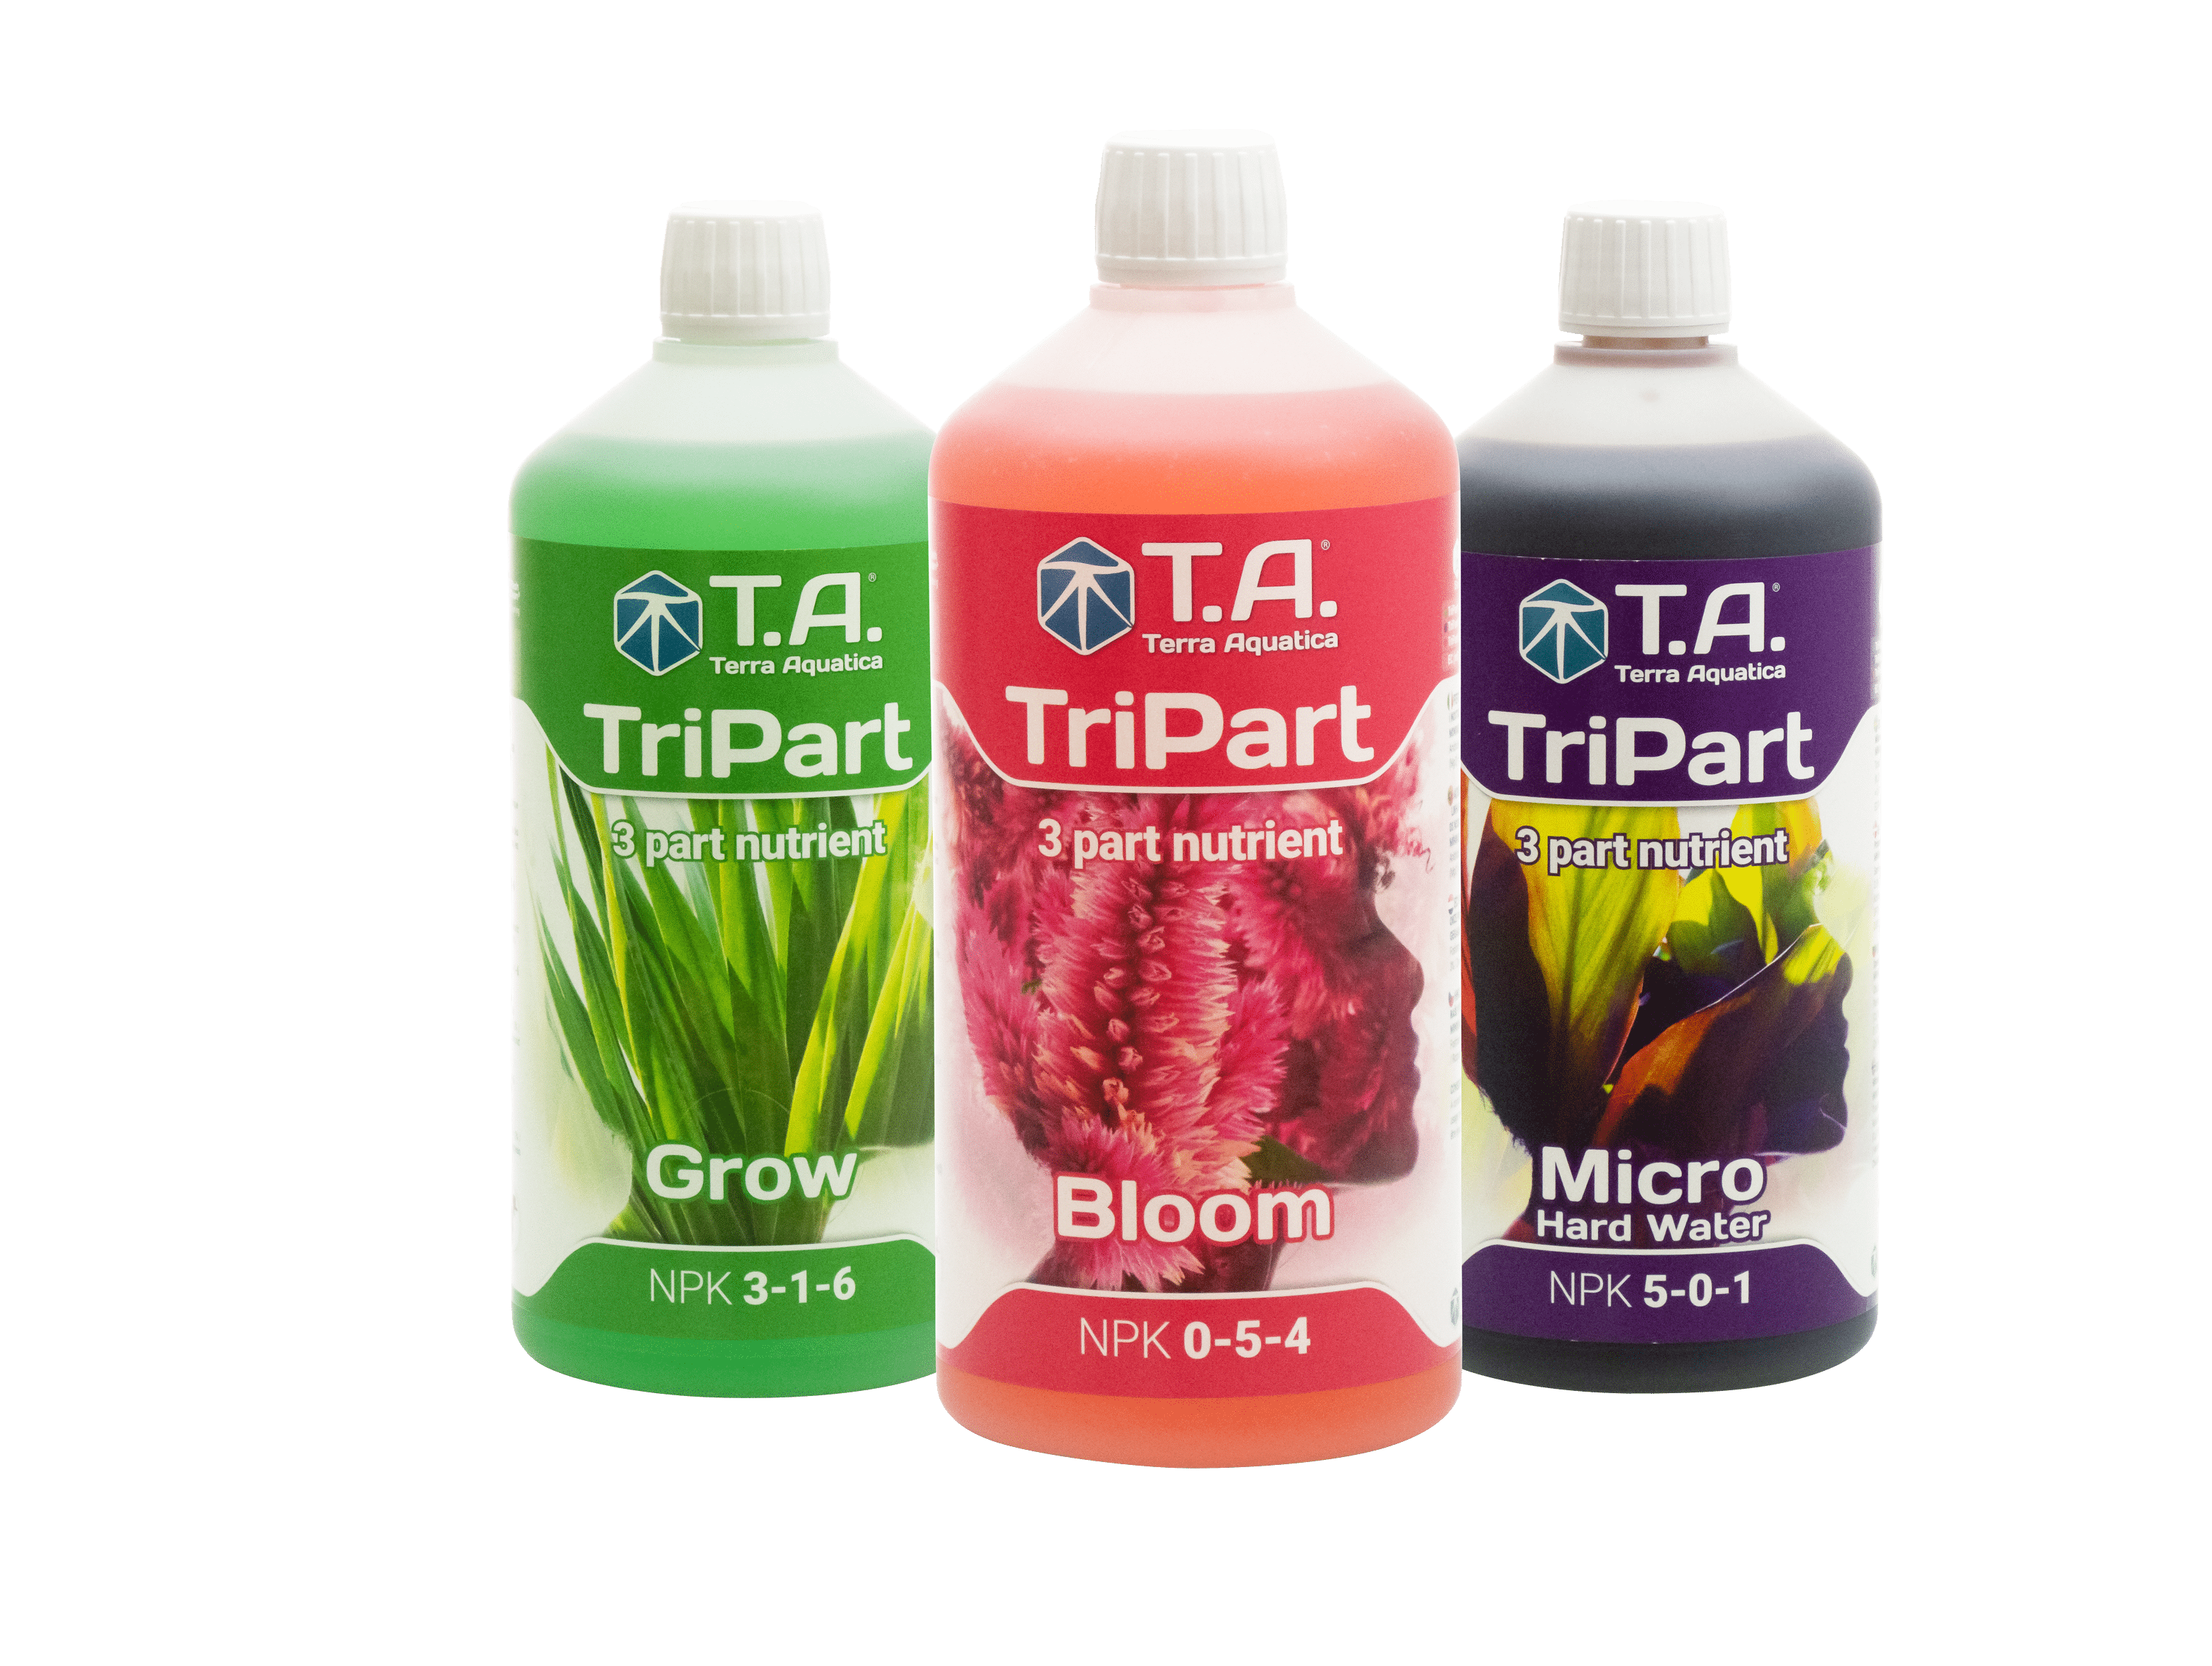 Nutrients Terra Aquatica TriPart Bloom